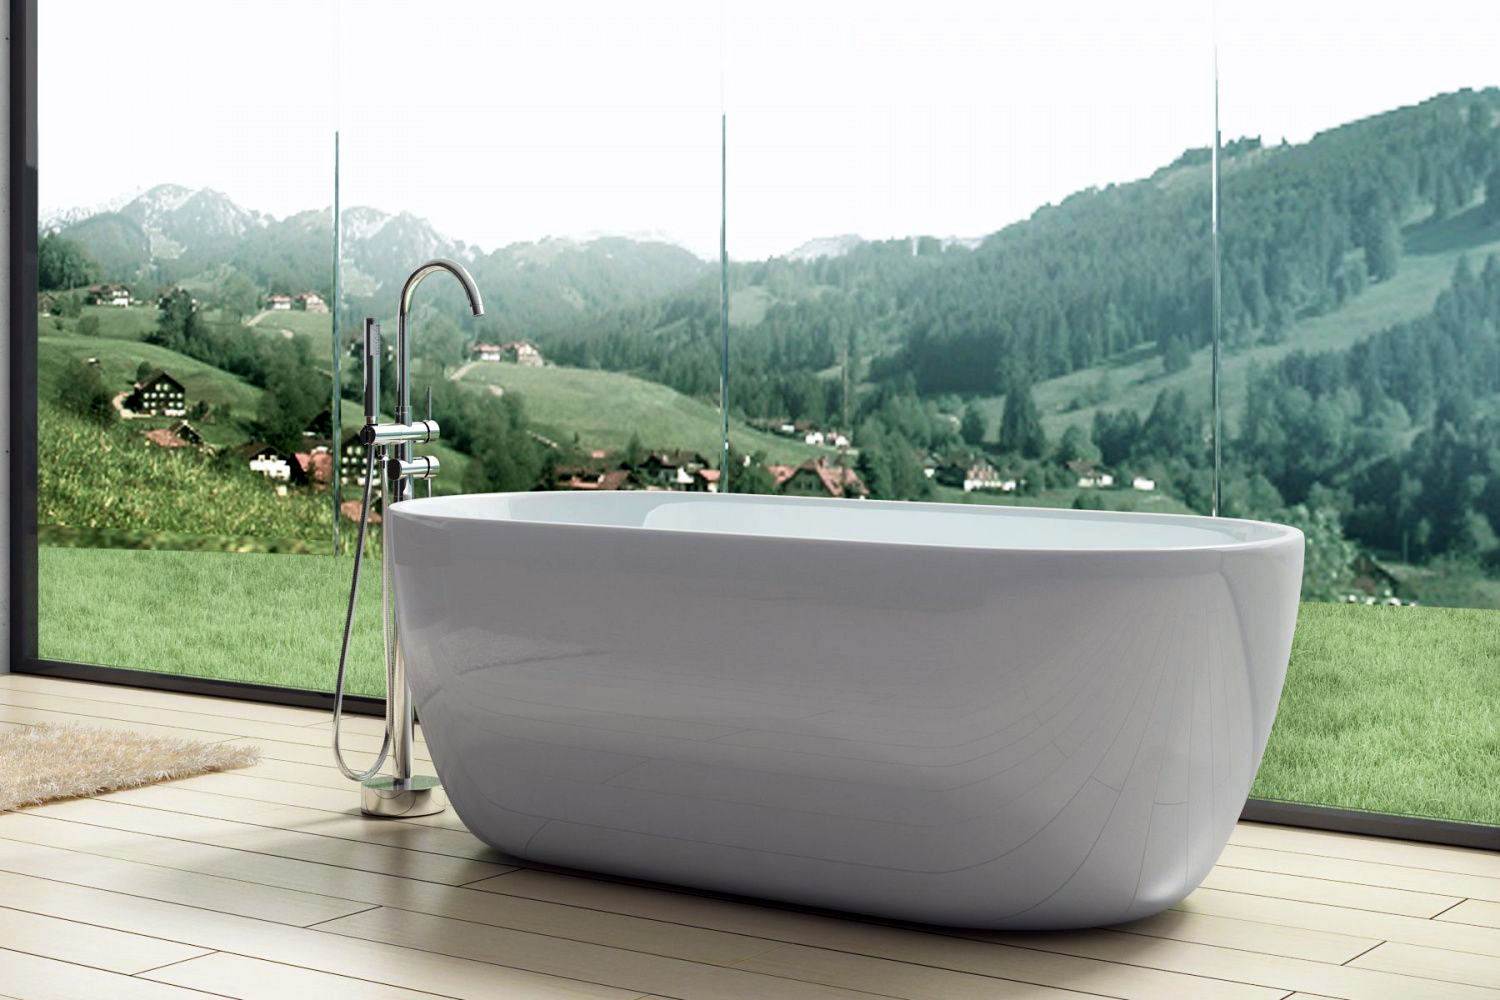 Акриловая ванна Art&Max 150х75 см AM-518-1500-780, белый